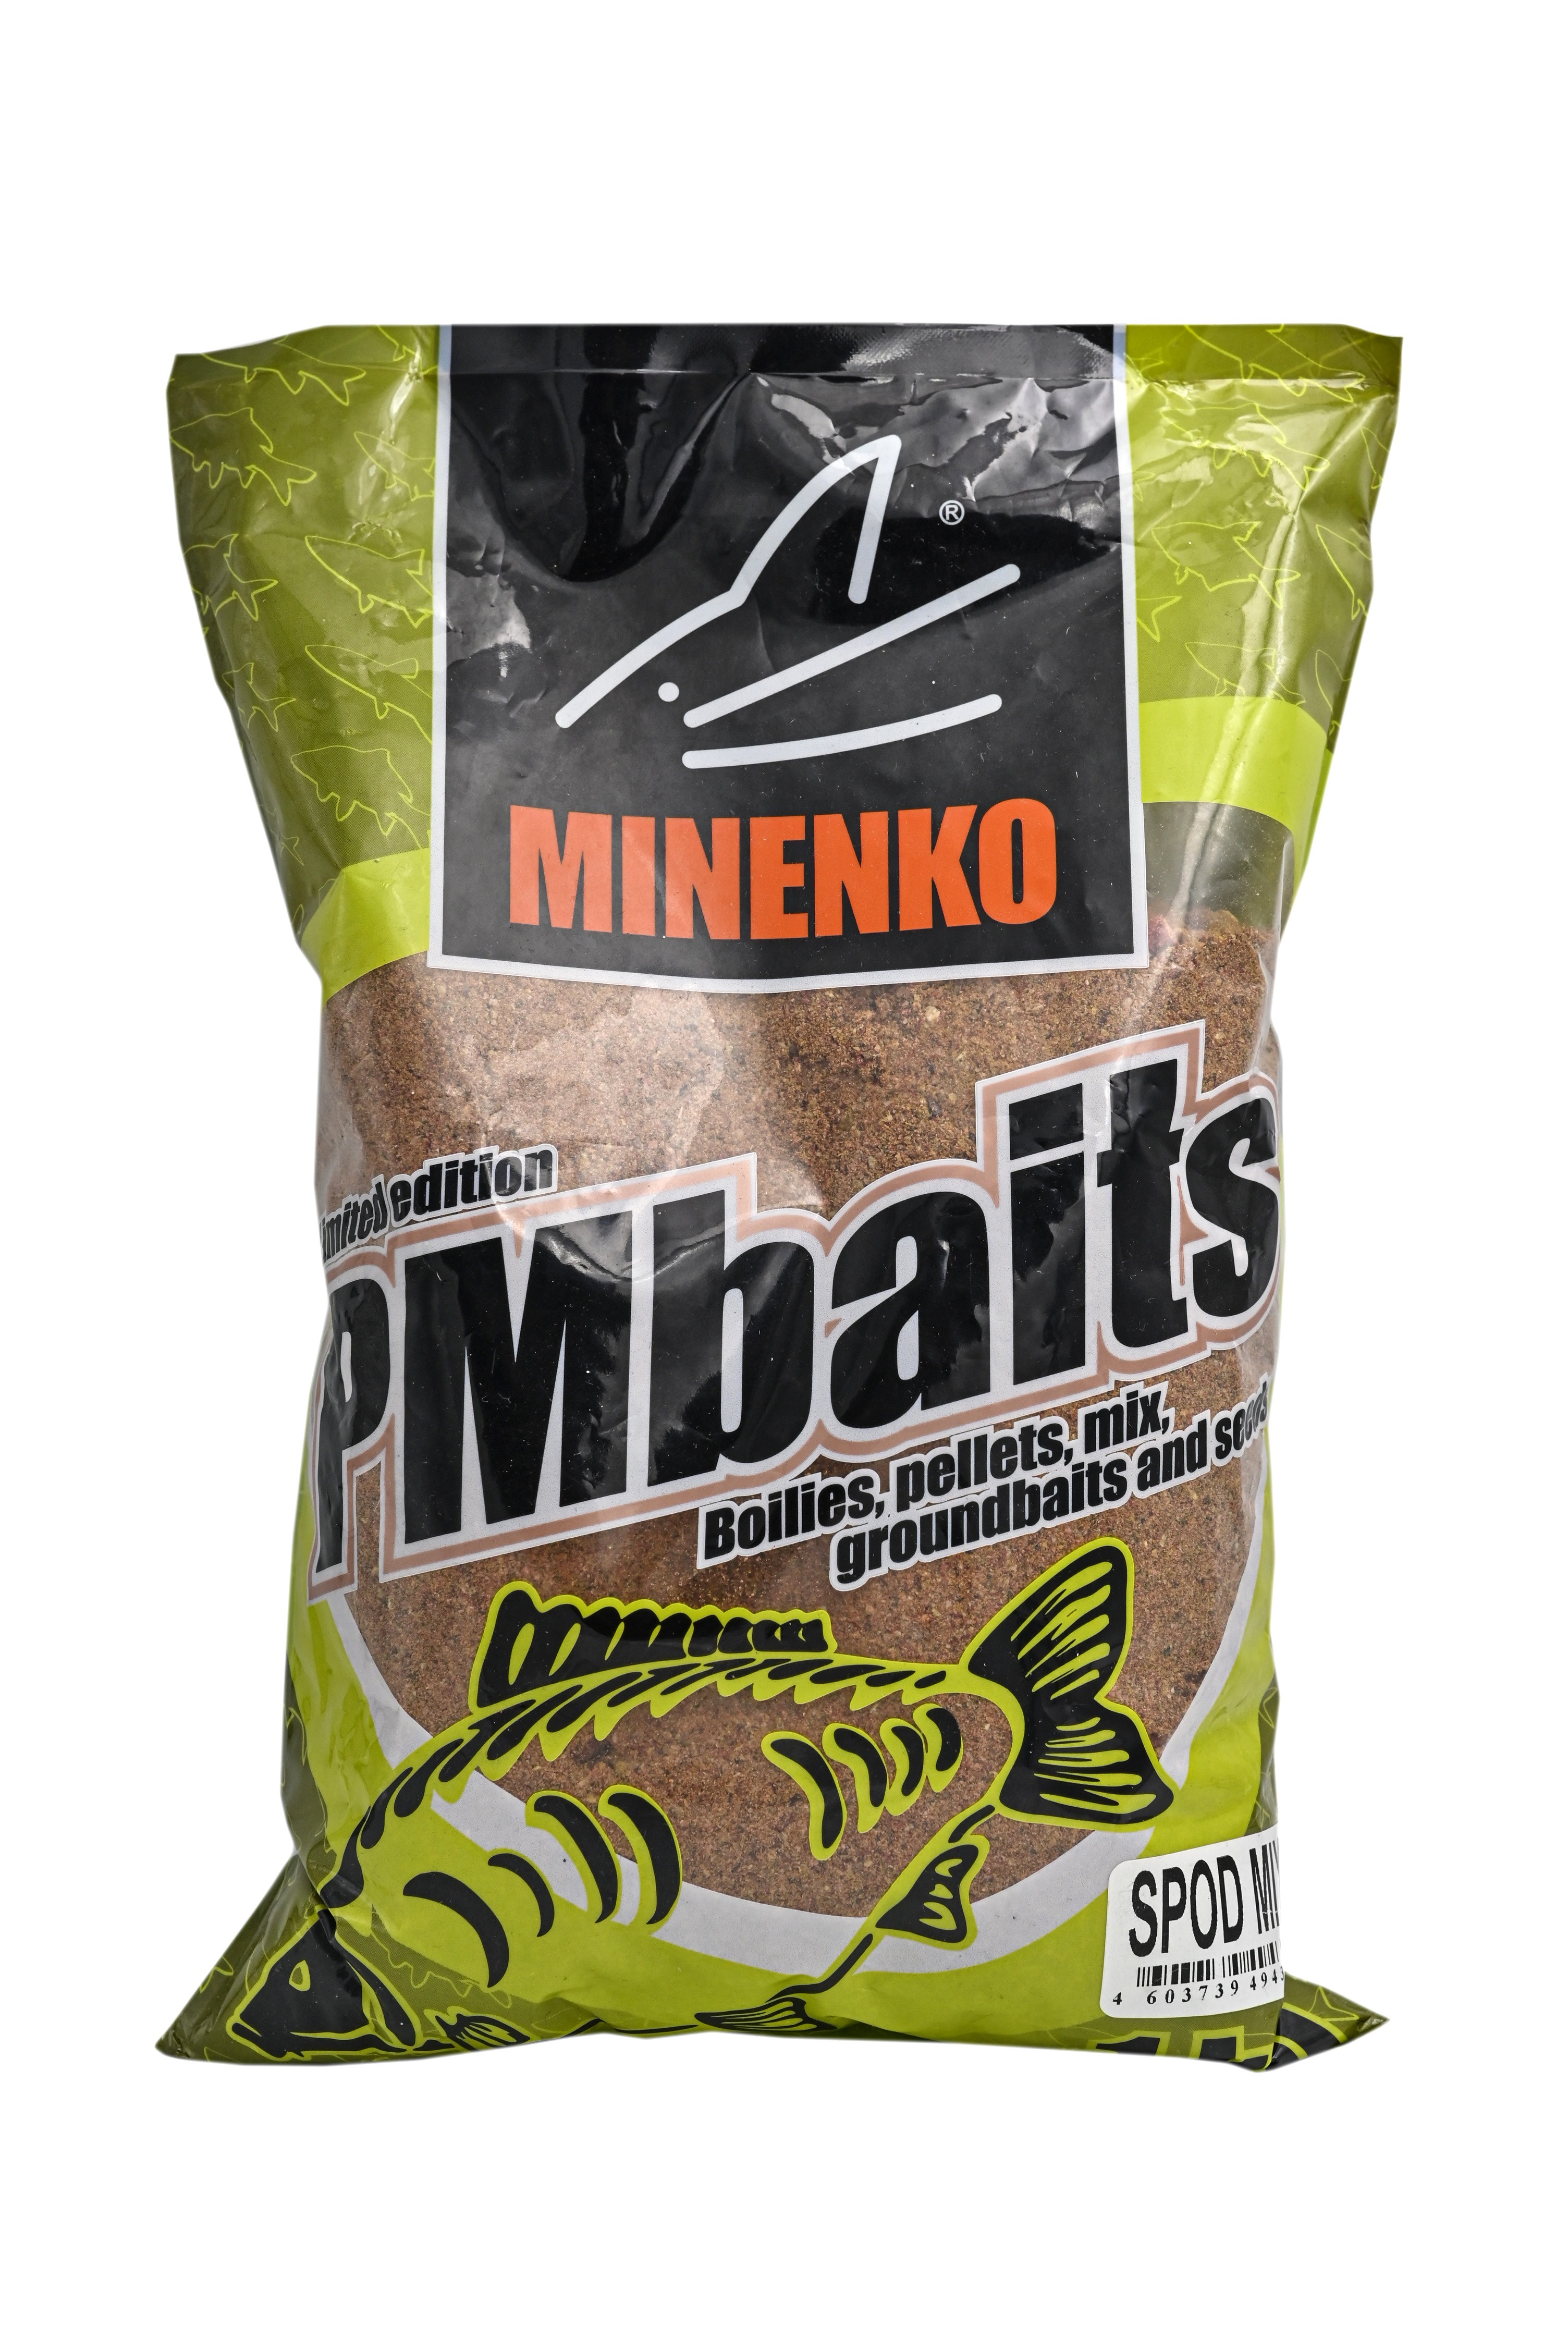 Прикормка MINENKO PMbaits Groundbaits 1кг spod mix aroma free